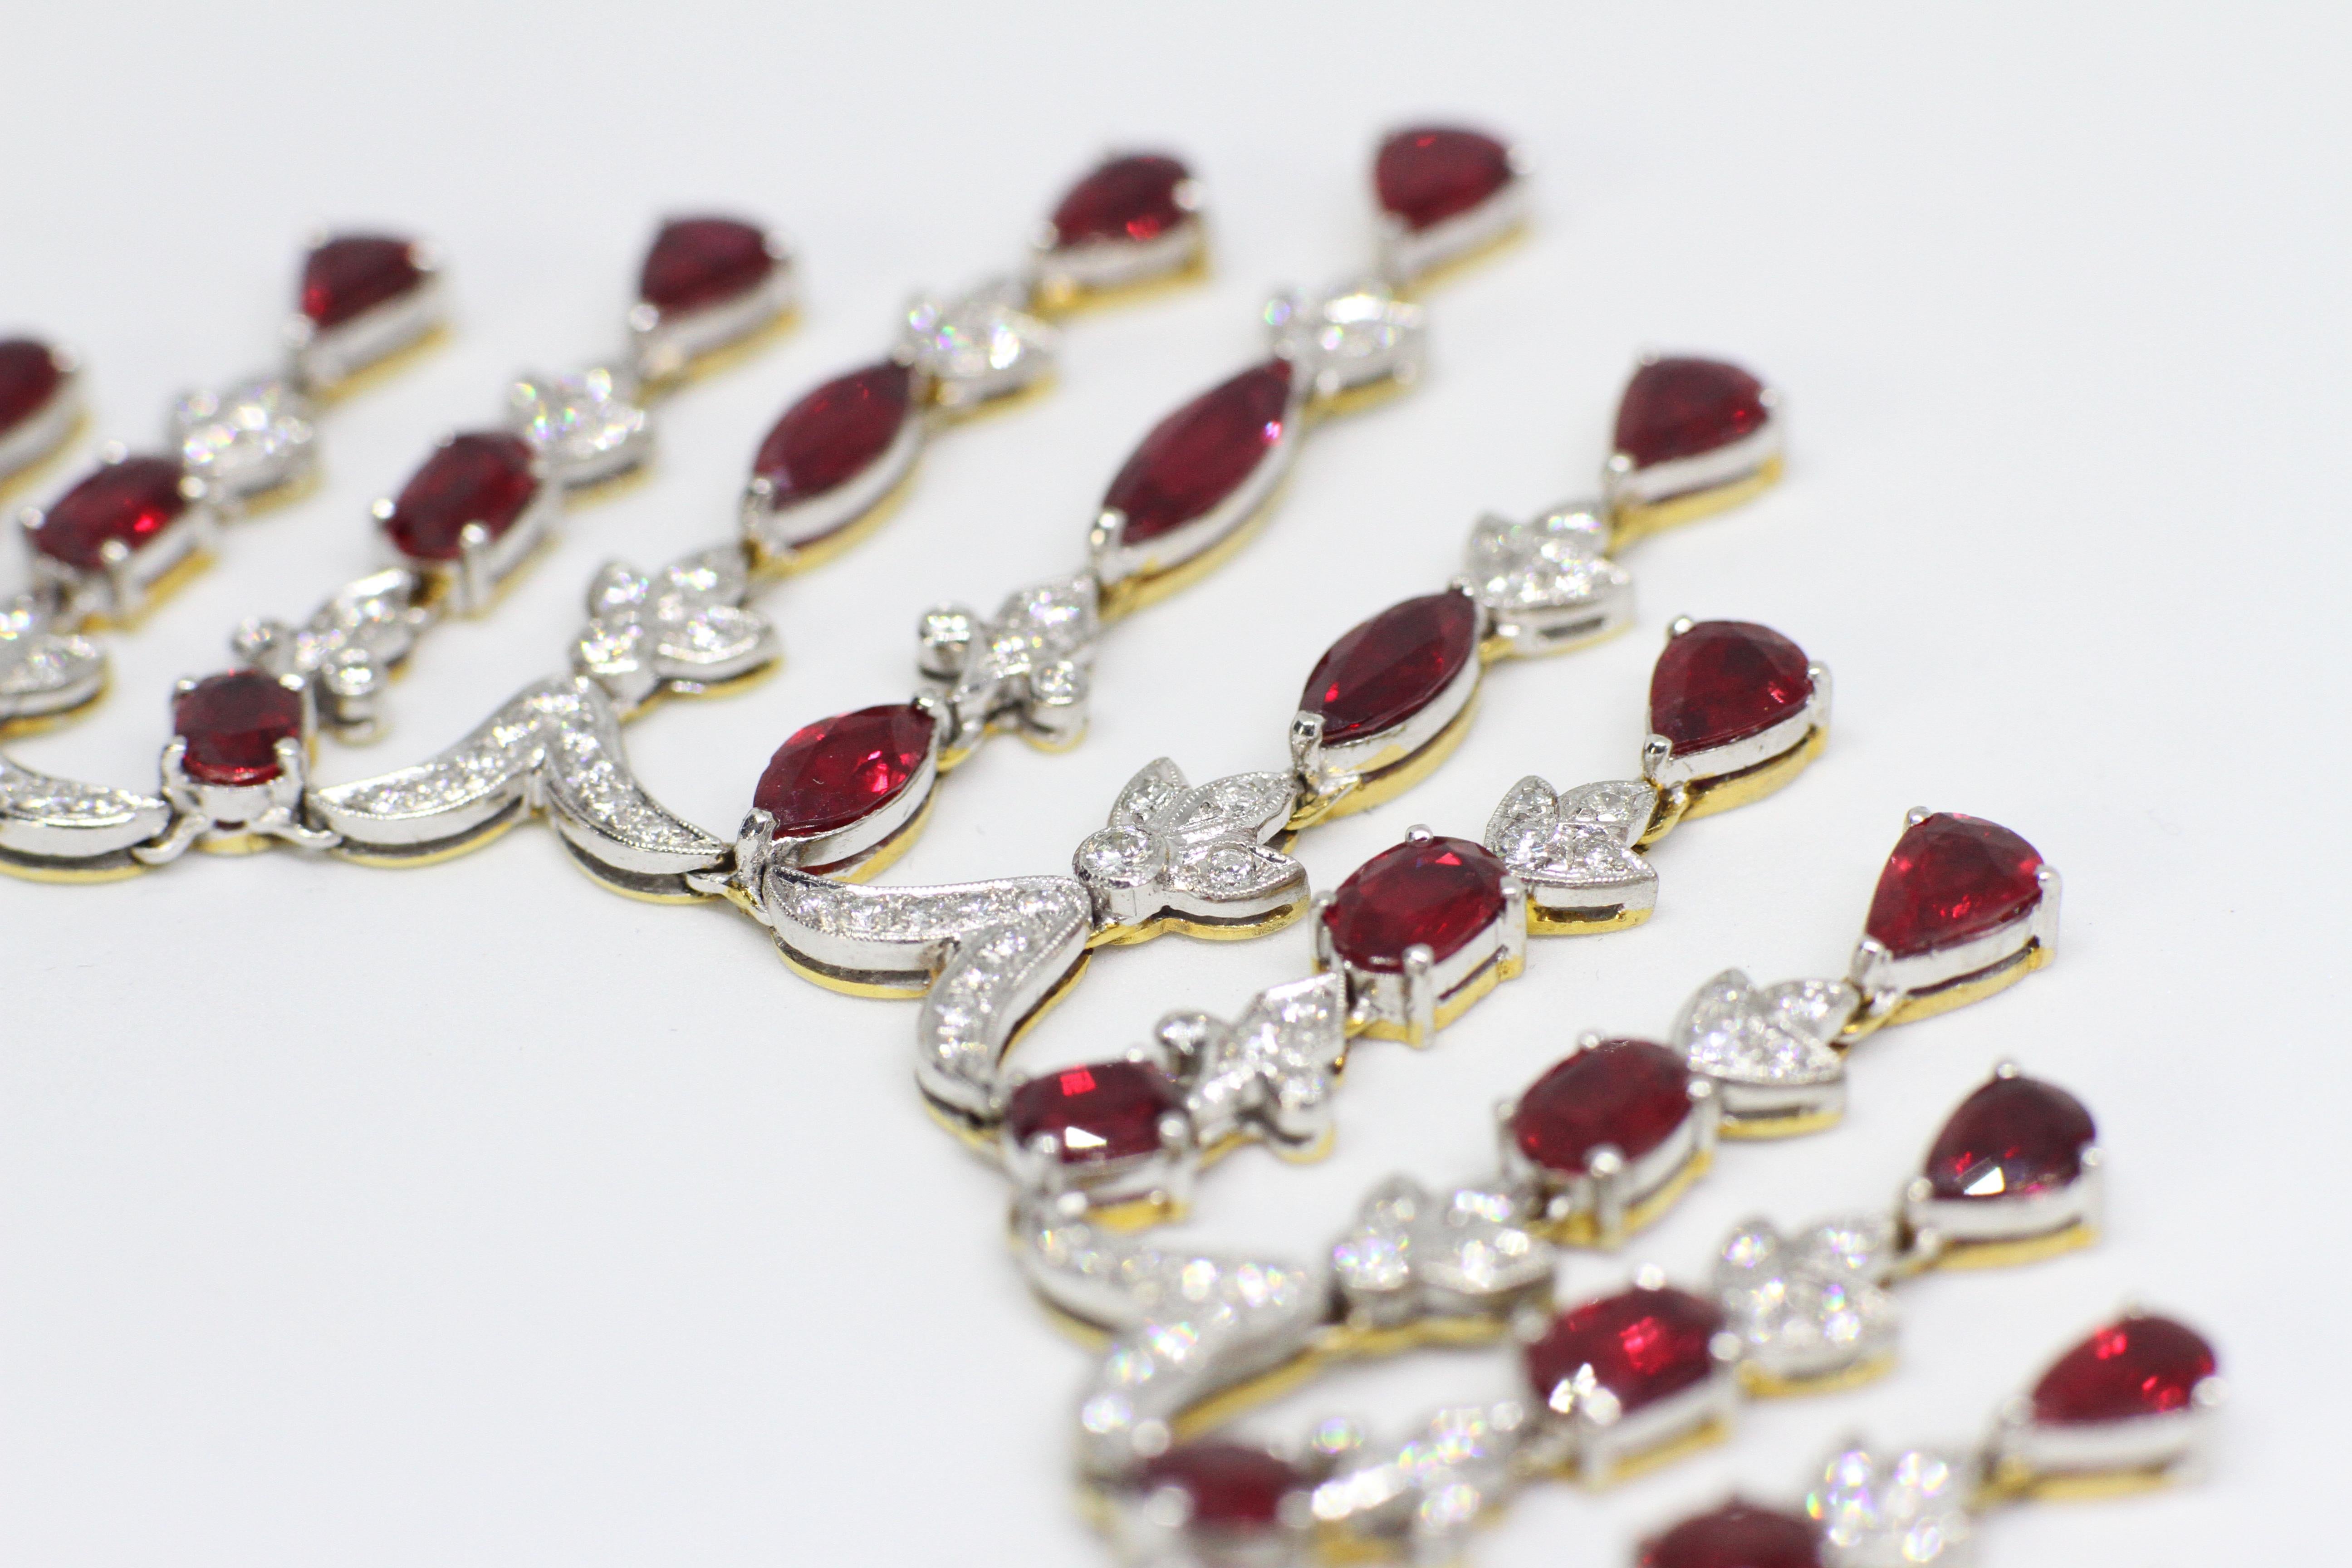 Spektakuläre Rubin- und Diamant-Halskette und Ohrring-Set in 18 Karat Weiß- und Gelbgold. Sie sind beide mit insgesamt neunundsechzig Rubinen besetzt - eine Kombination aus marquise-, birnen-, runden und ovalen Rubinen mit einem ungefähren